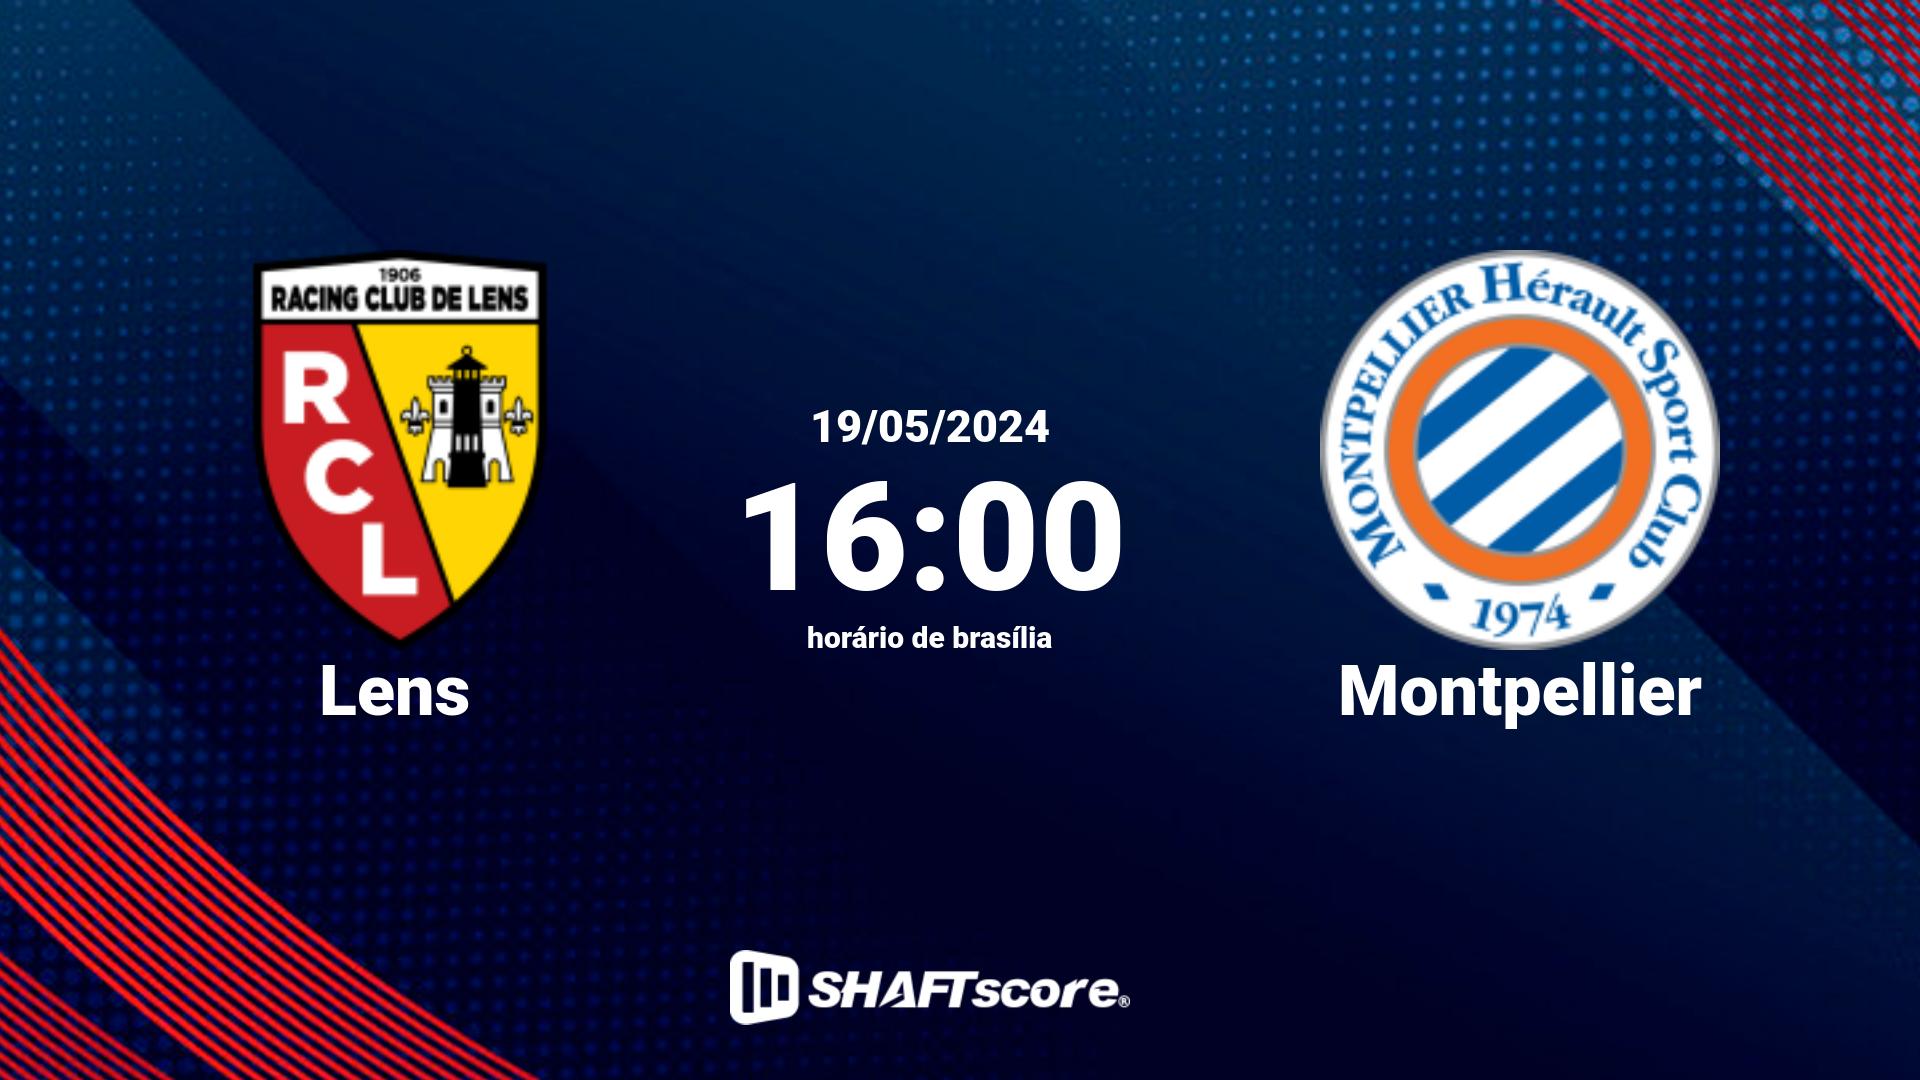 Estatísticas do jogo Lens vs Montpellier 19.05 16:00